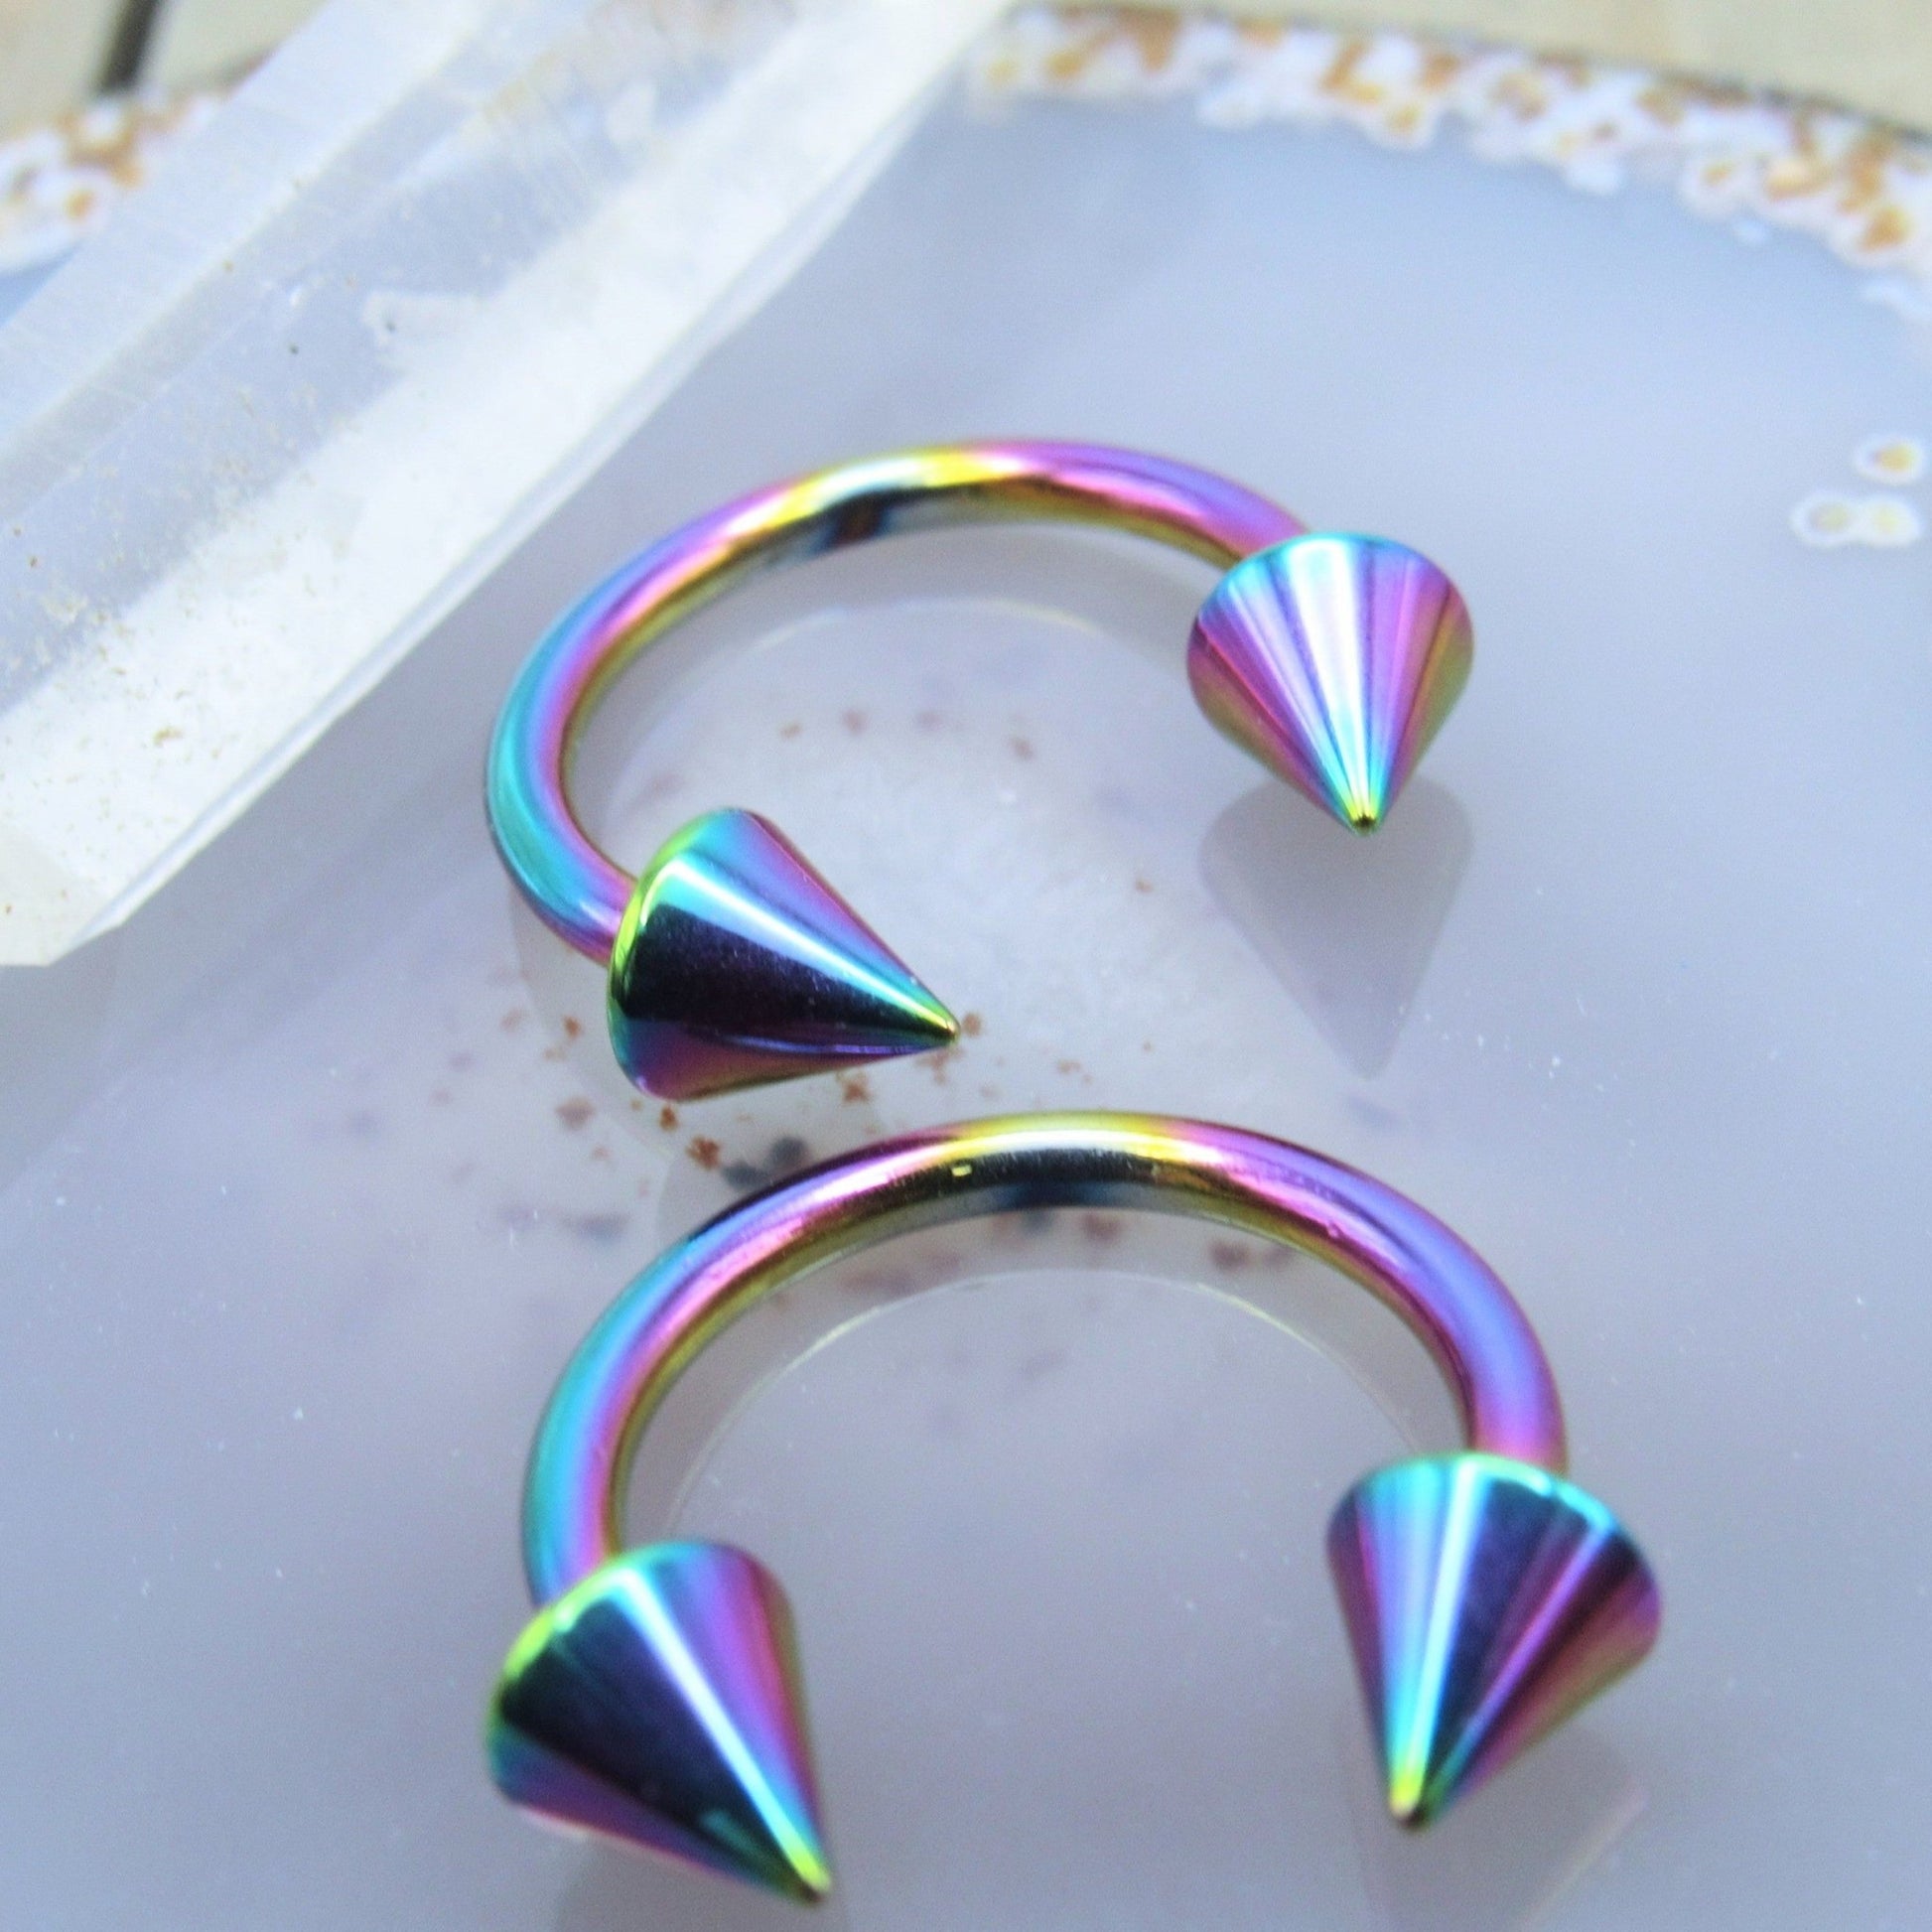 Spike horseshoe earring set 14g 1/2" rainbow lip earlobe piercing body jewelry hoops - Siren Body Jewelry